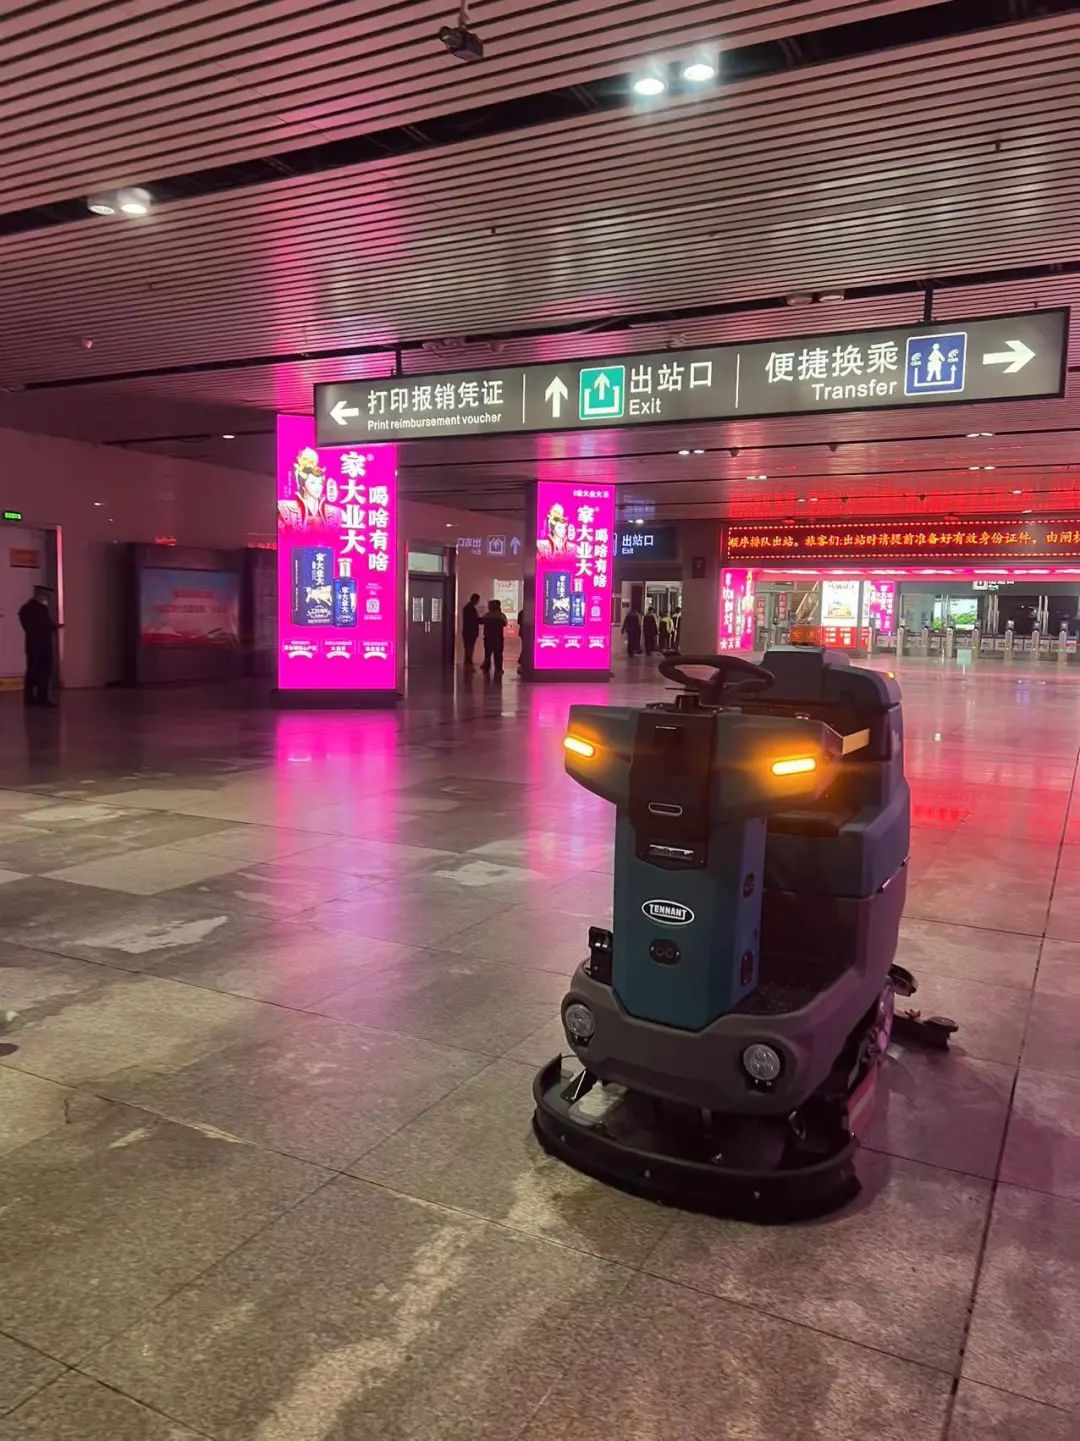 清洁快讯 | 坦能全新清洁机器人T760AMR，引领AI智能清洁